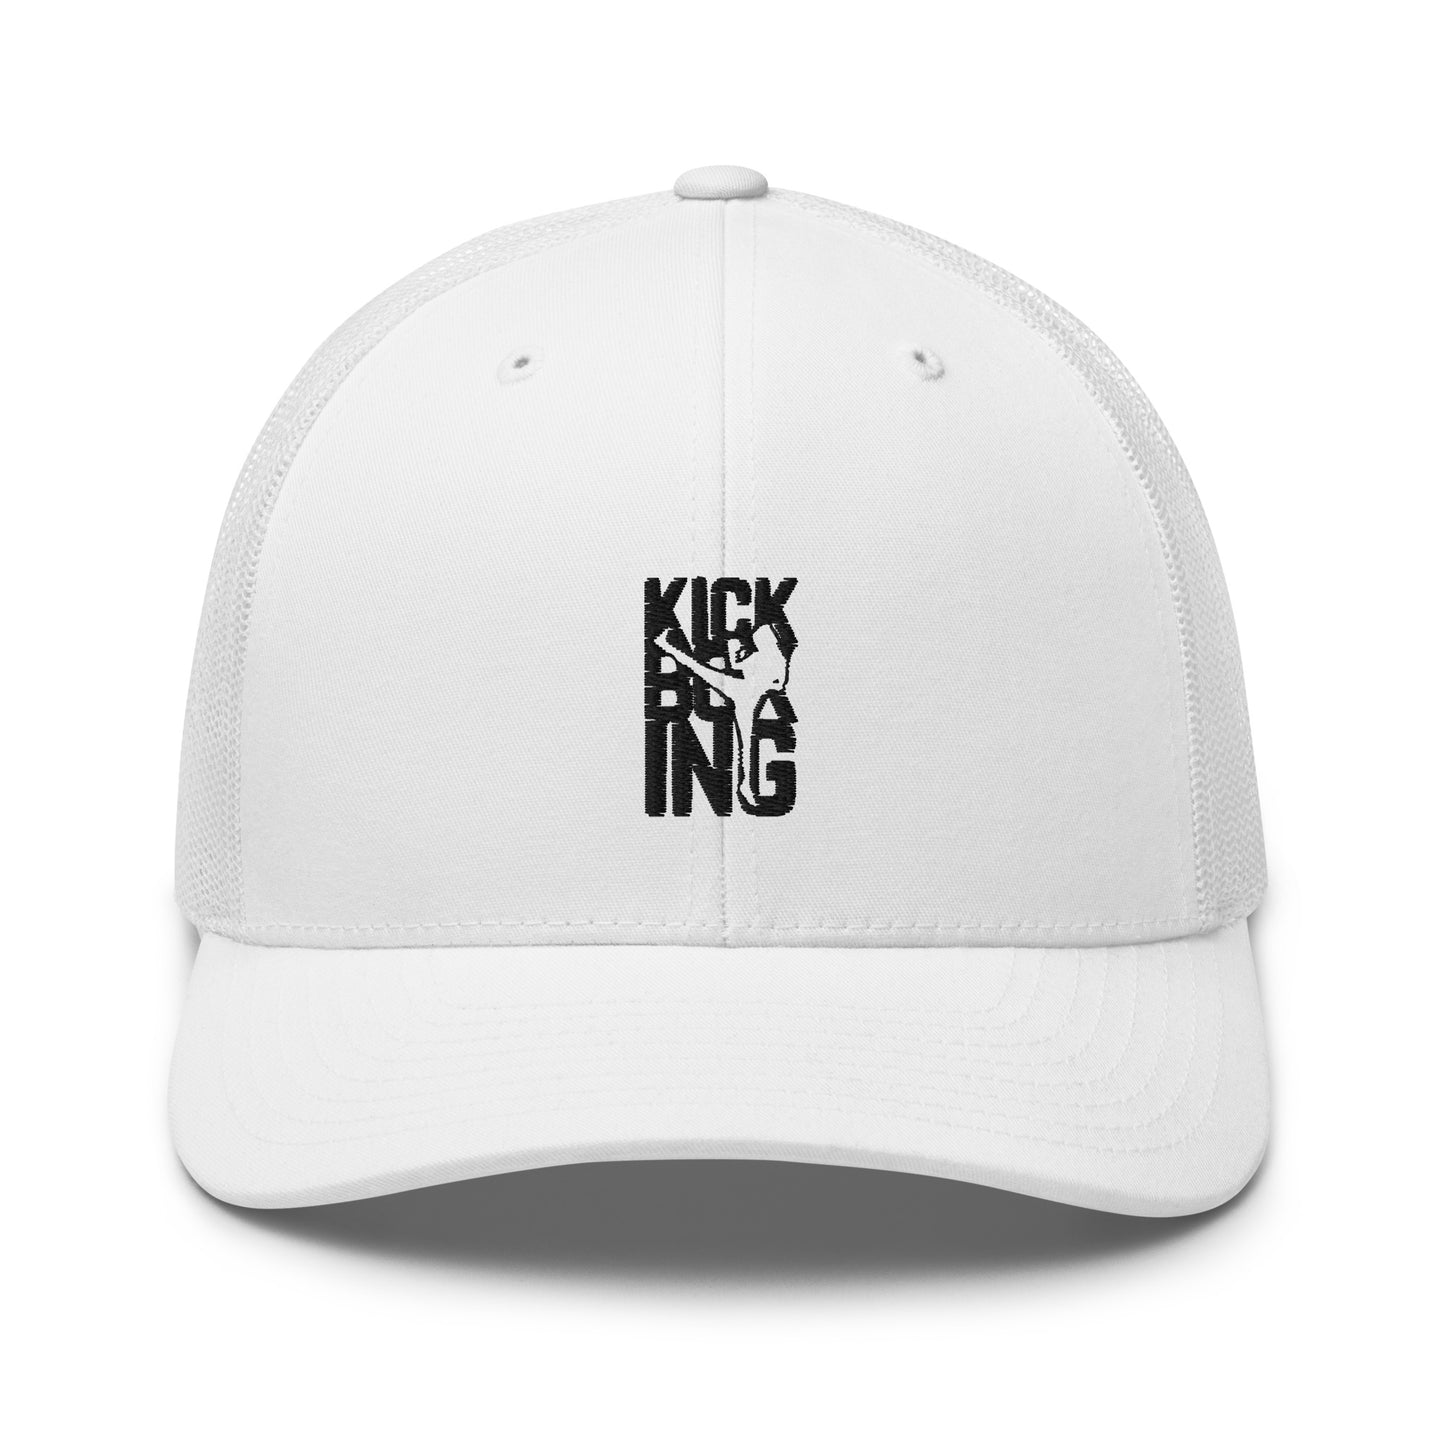 Kickboxing Trucker Cap